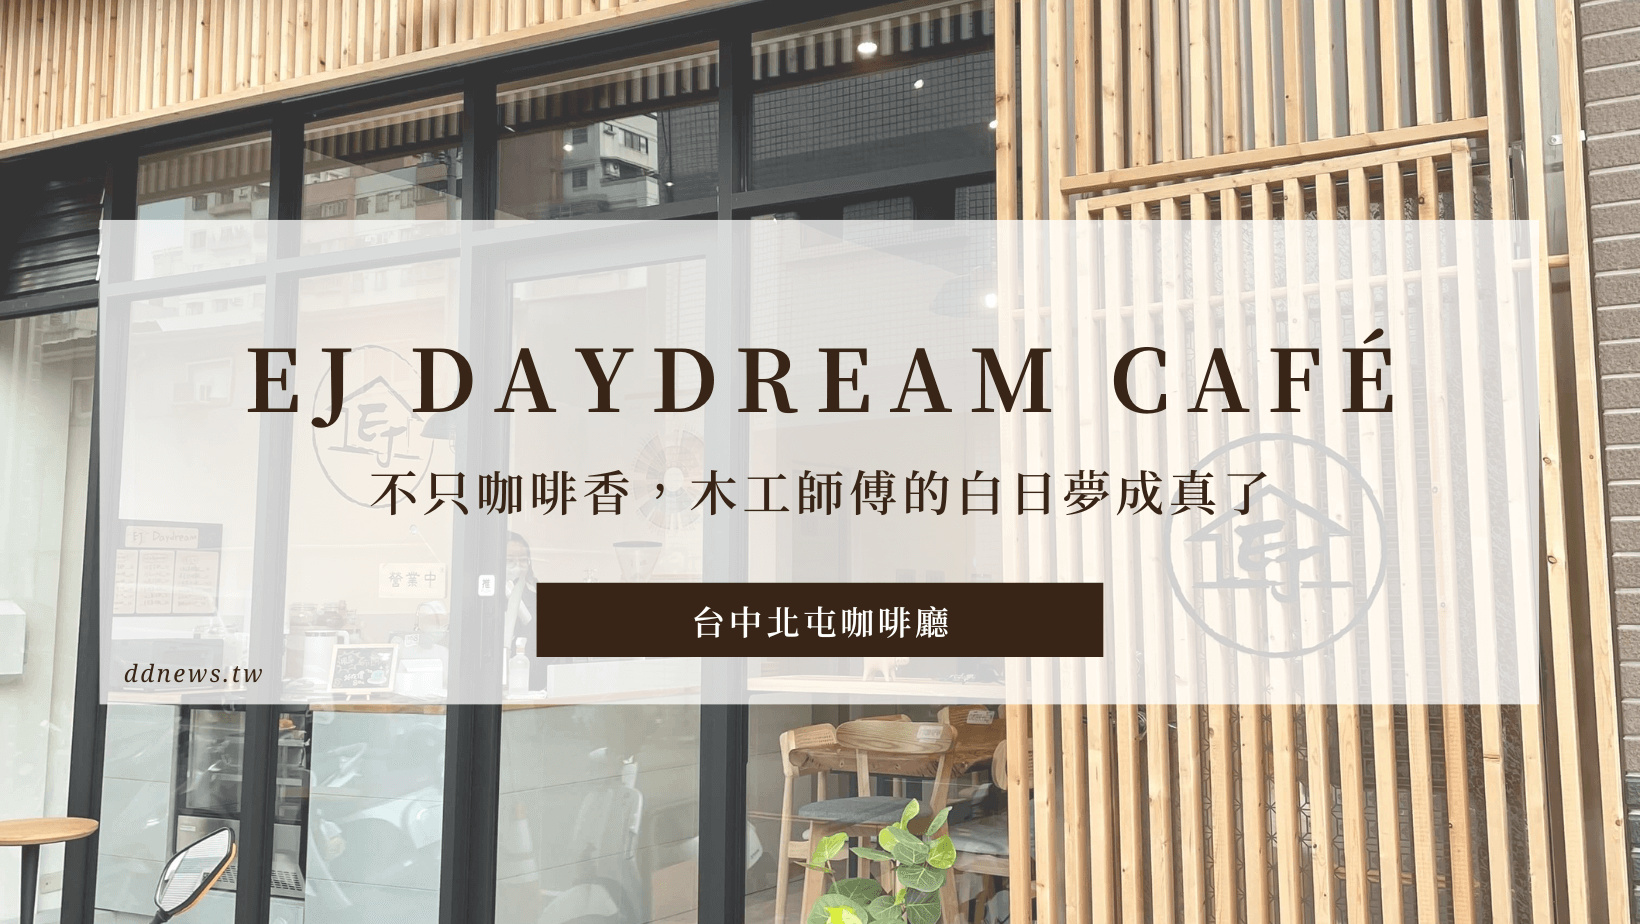 EJ Daydream Café